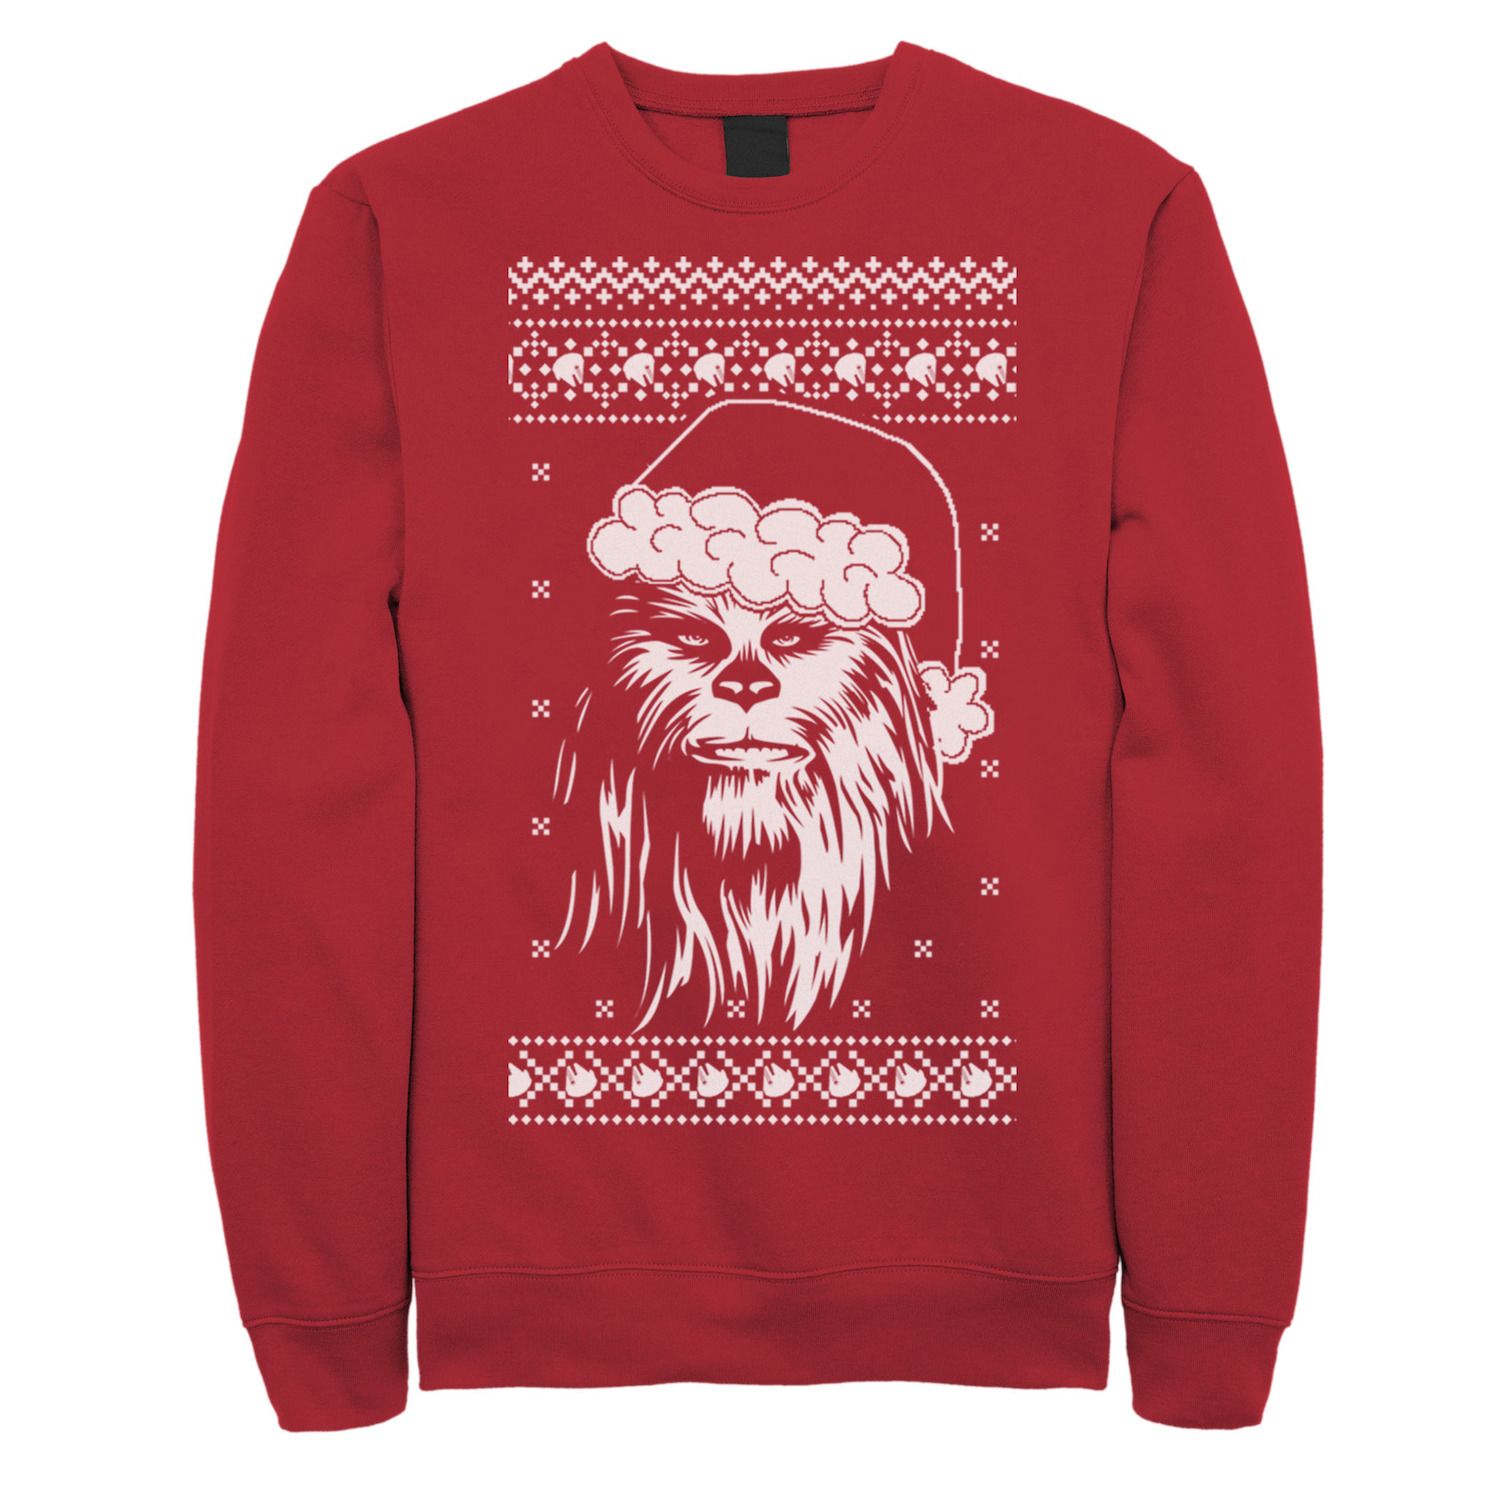 chewbacca sweatshirt